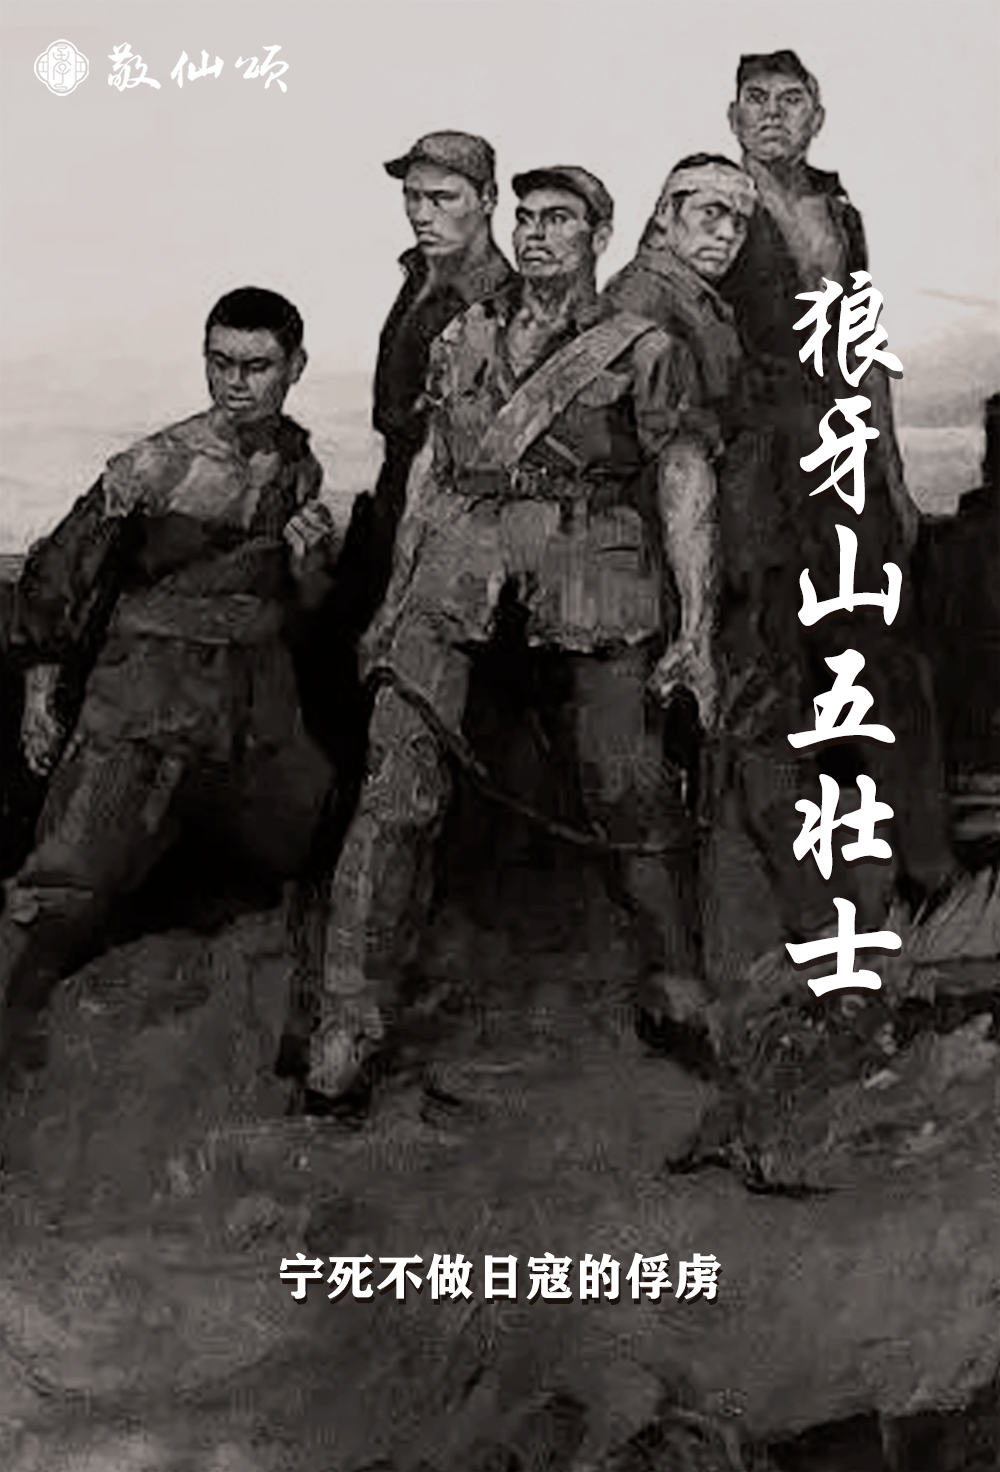 英雄时代第25期|百位模范之狼牙山五壮士: 中国的五个"神兵"